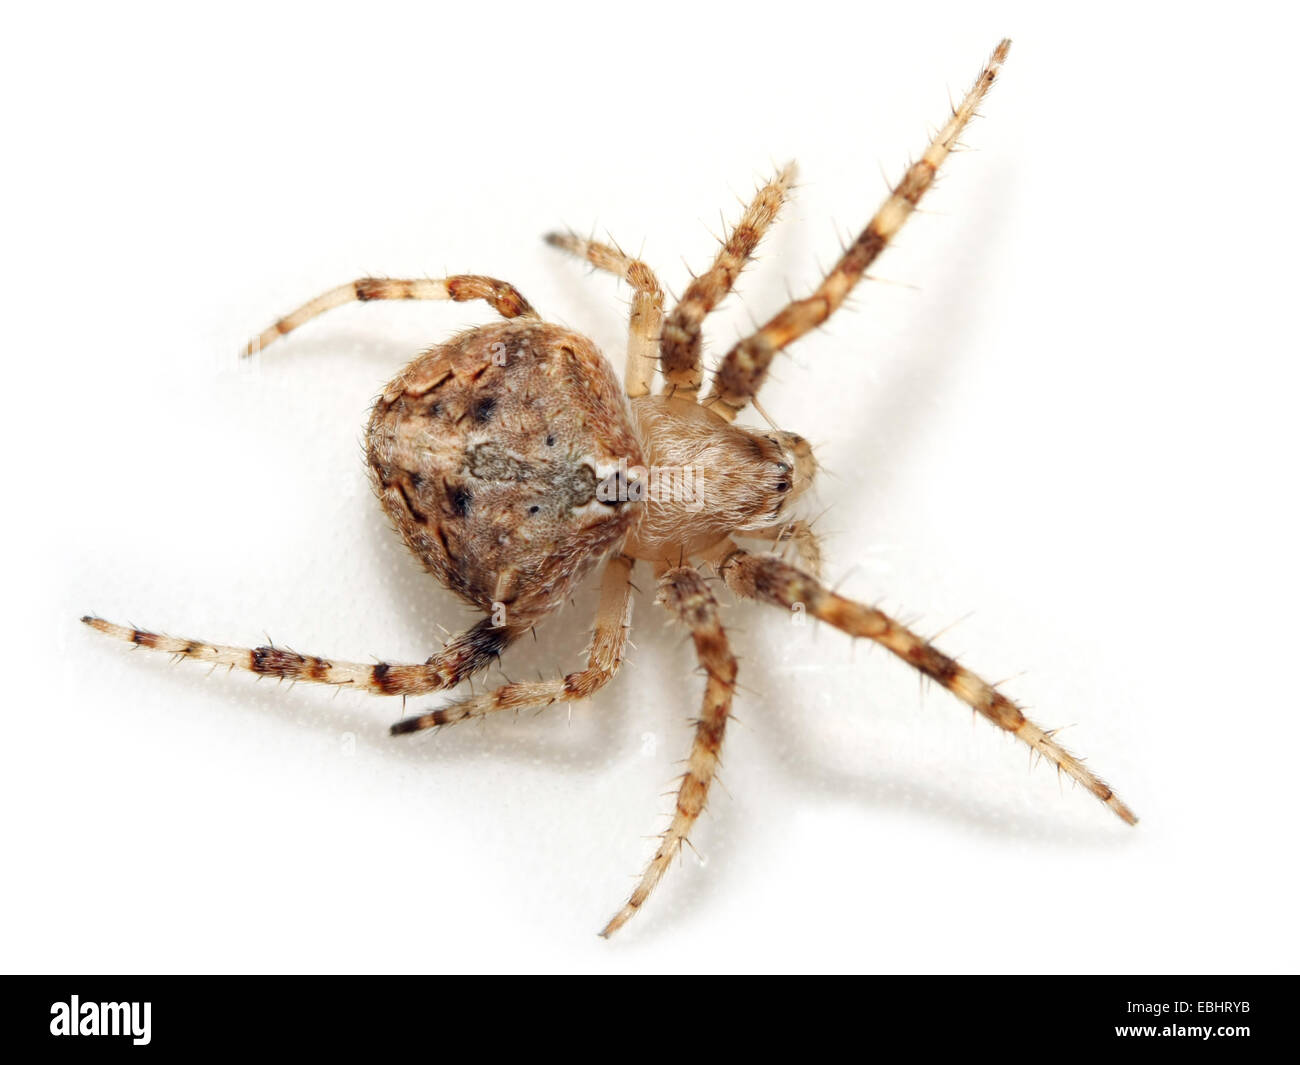 Una femmina orbweaving spider (Neoscona subfusca) su sfondo bianco. Orbweavers sono parte della famiglia Araneidae. Foto Stock